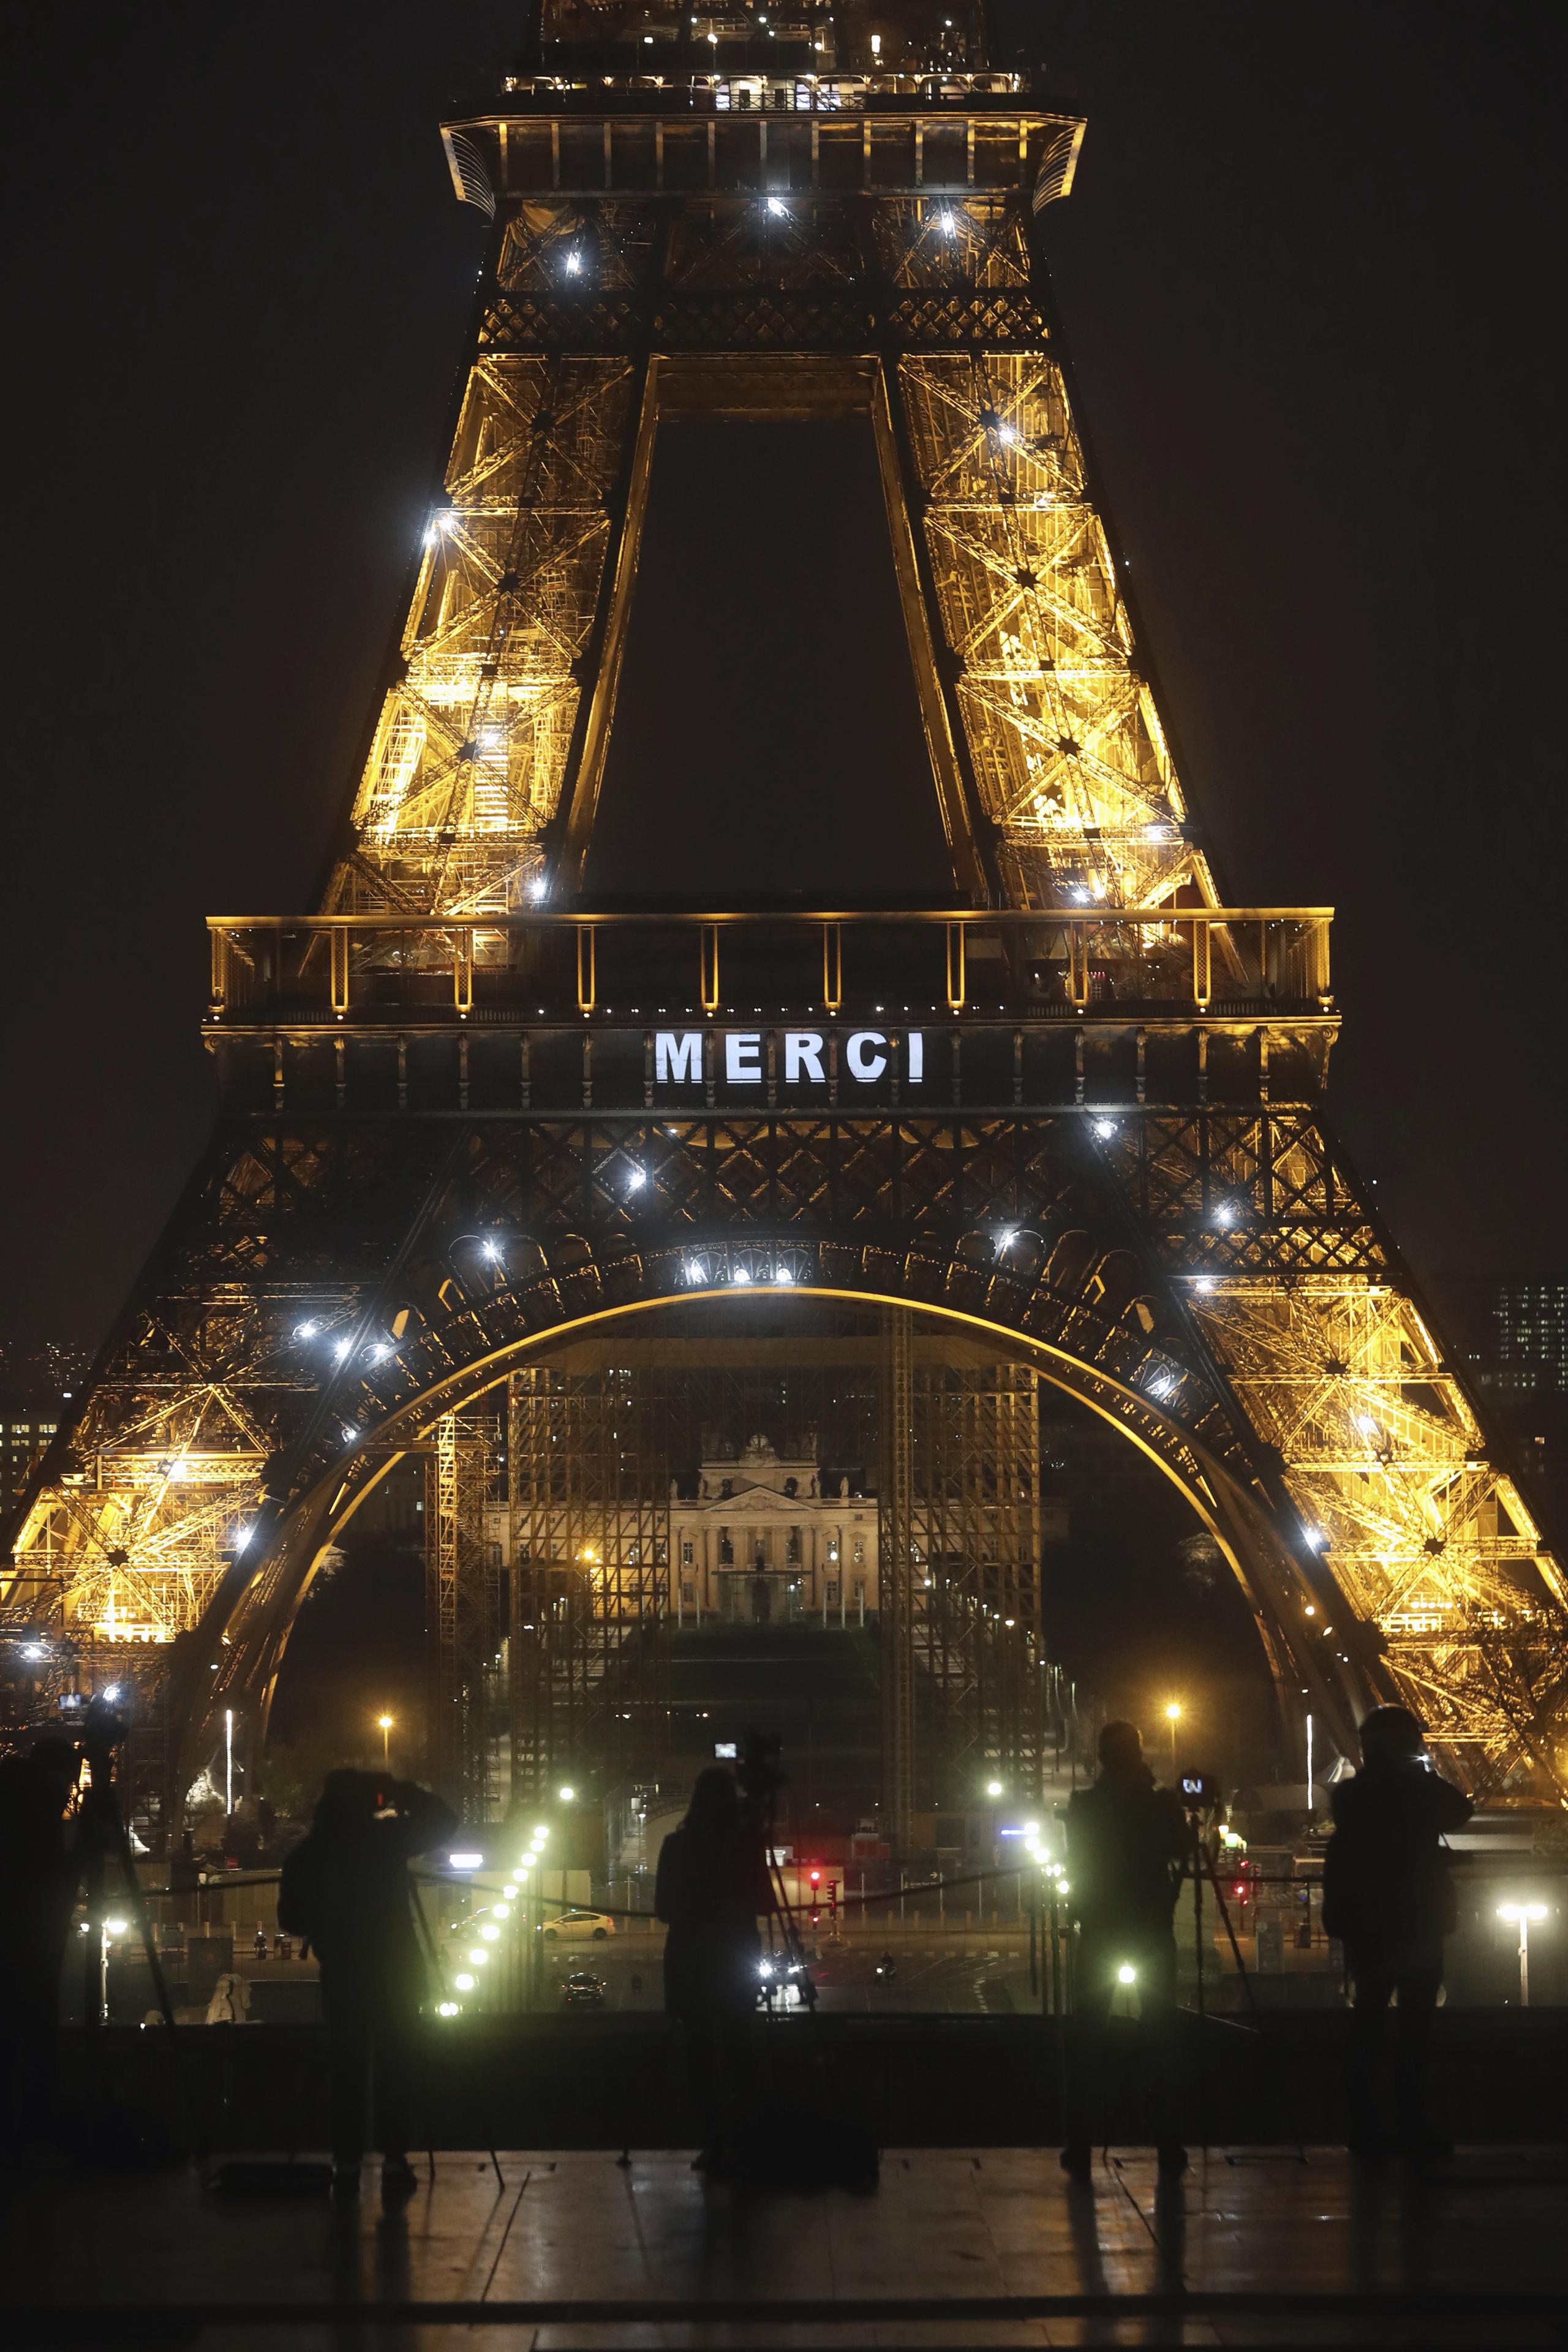 Miembros de la prensa apostados frente a la Torre Eiffel, que despliega la palabra "Merci"